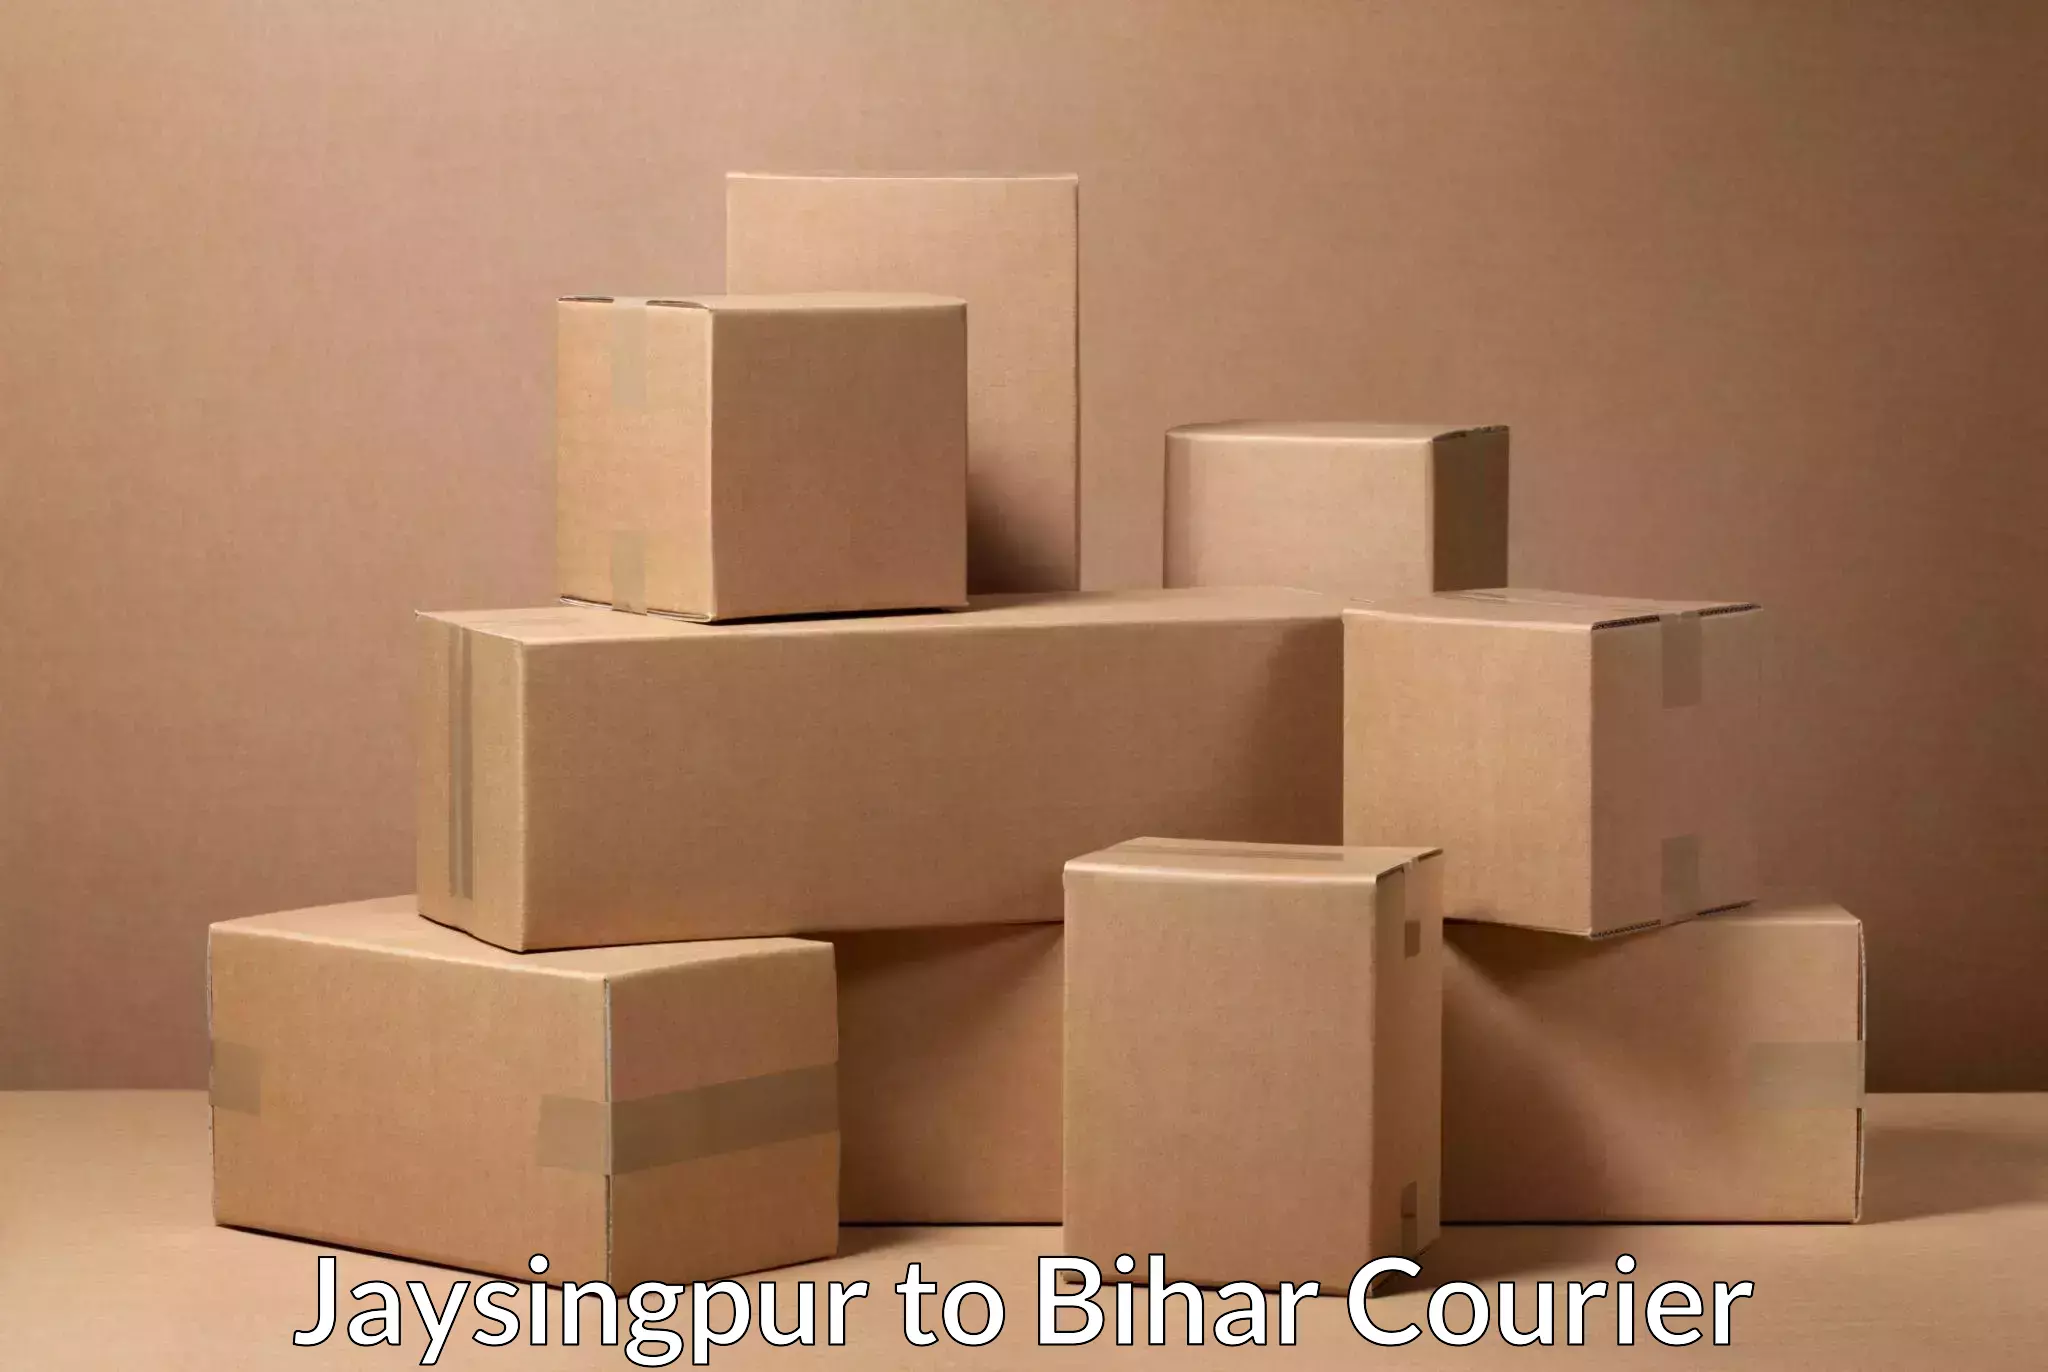 Local courier options Jaysingpur to Lakhisarai